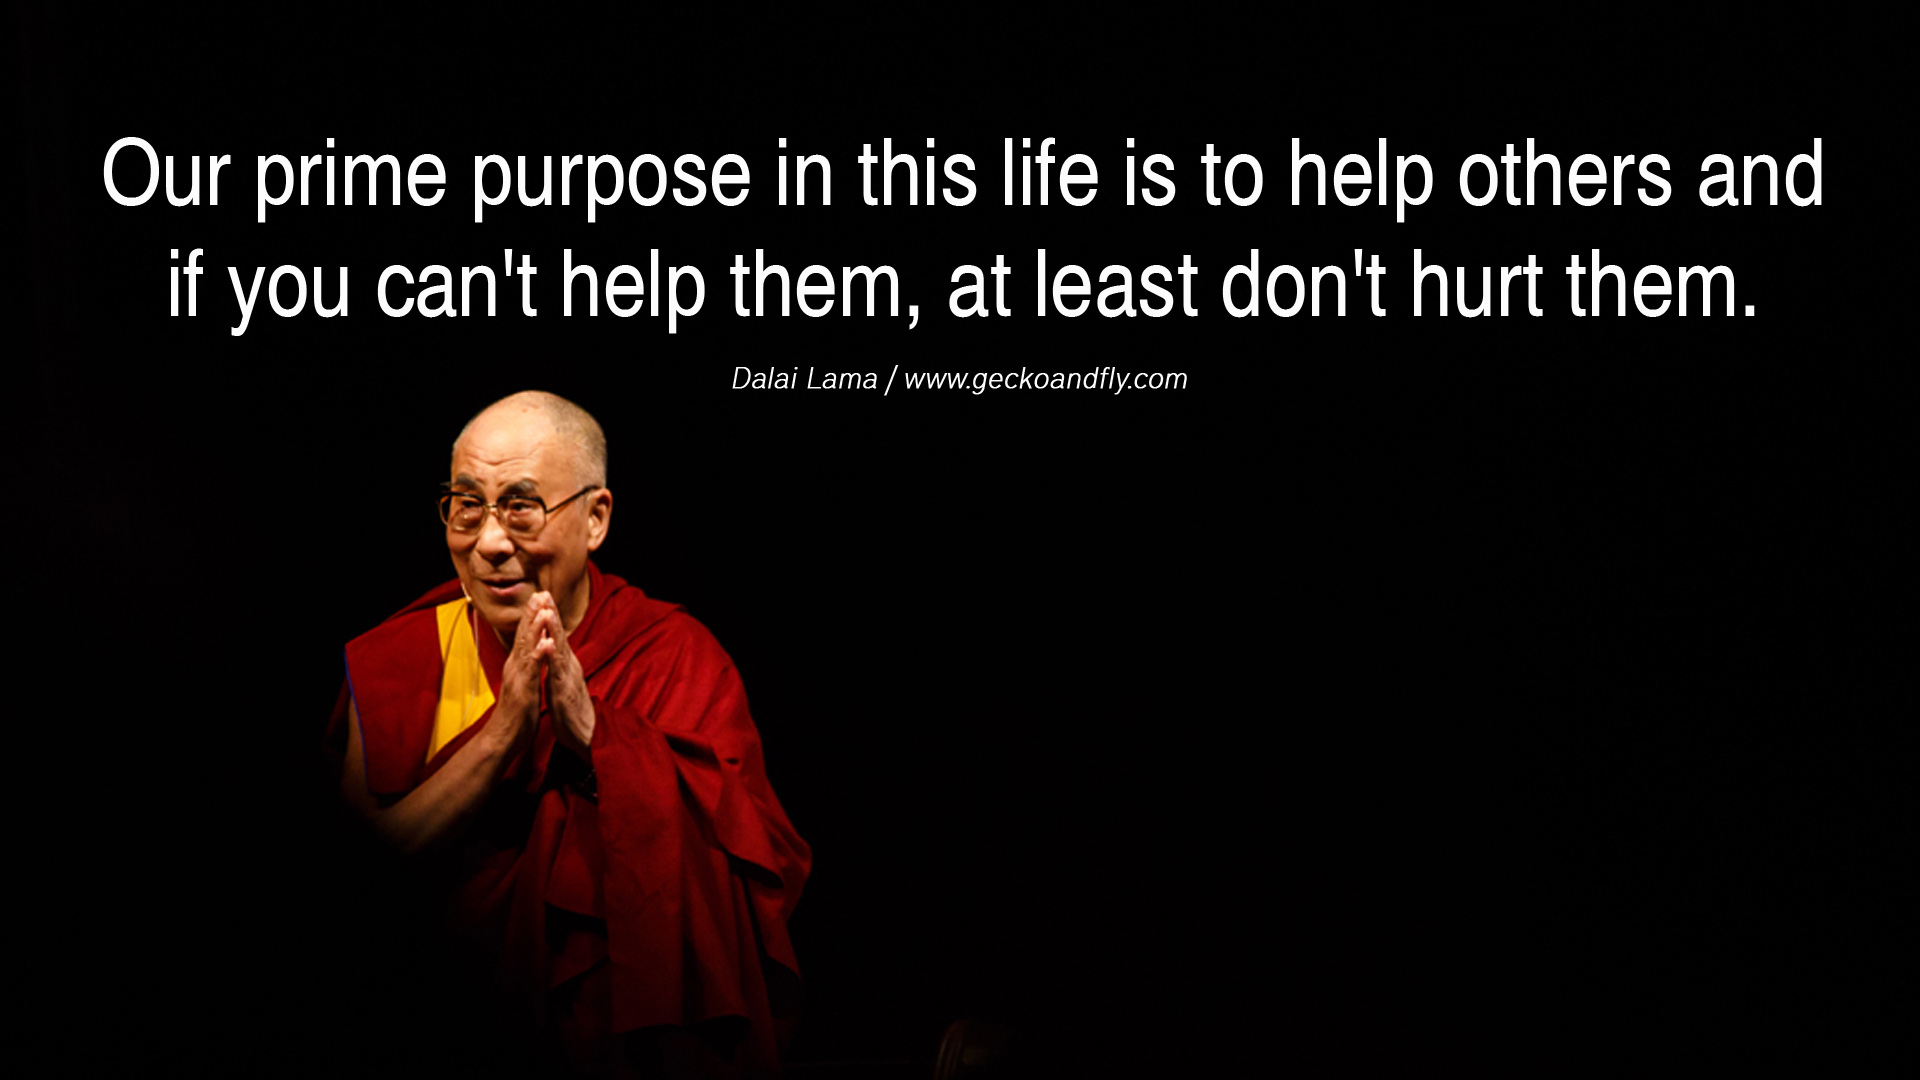 dalai-lama12.jpg